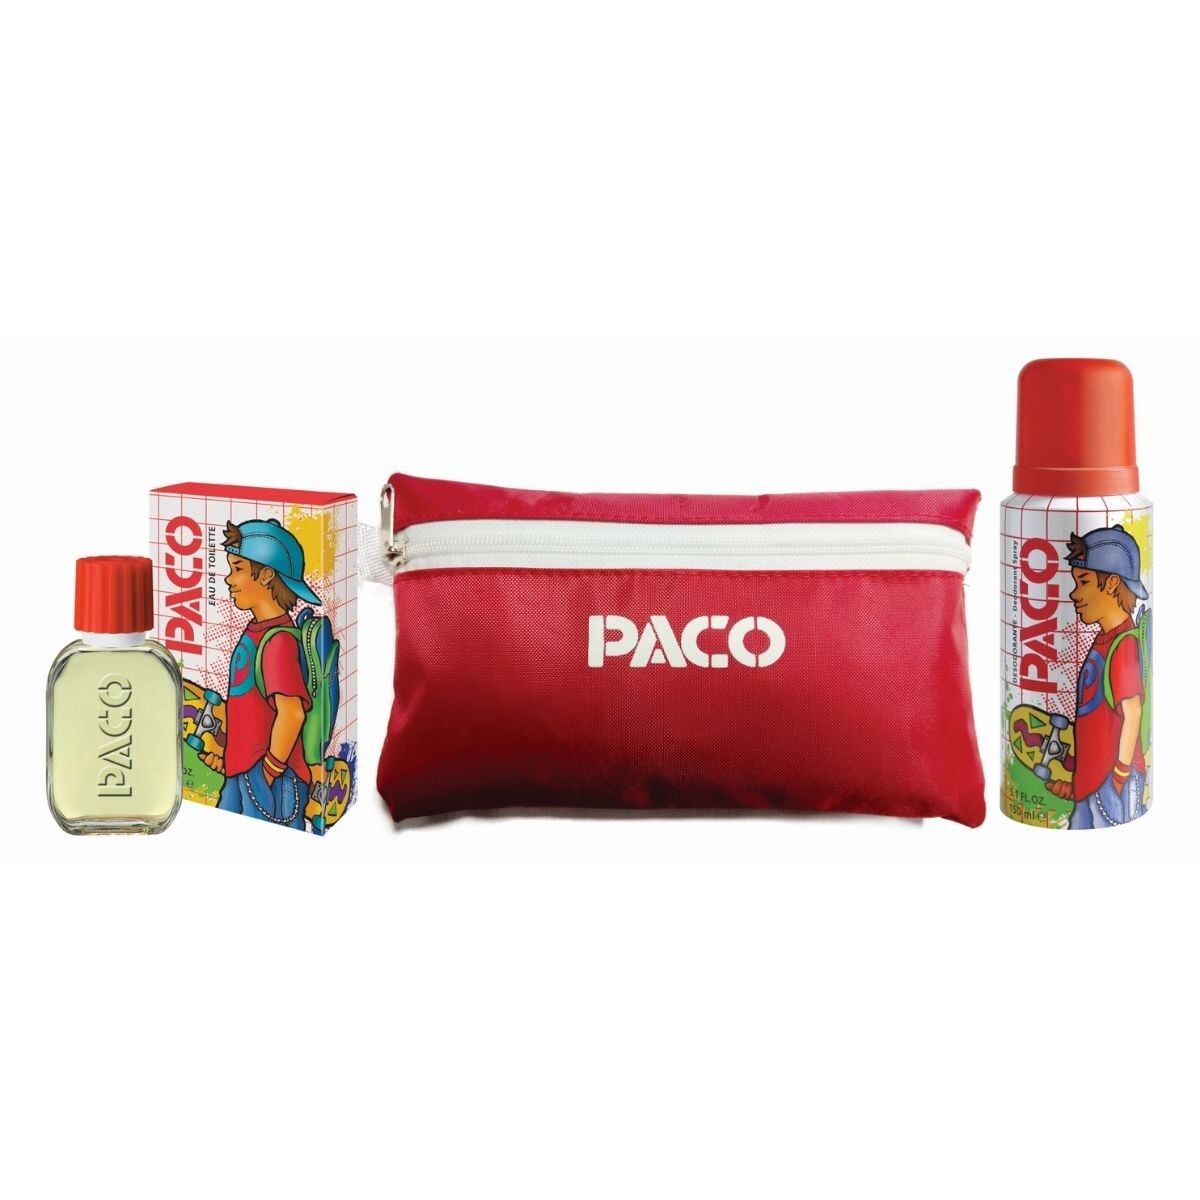 Colonia Paco Clásica - Pack Desodorante y Estuche 